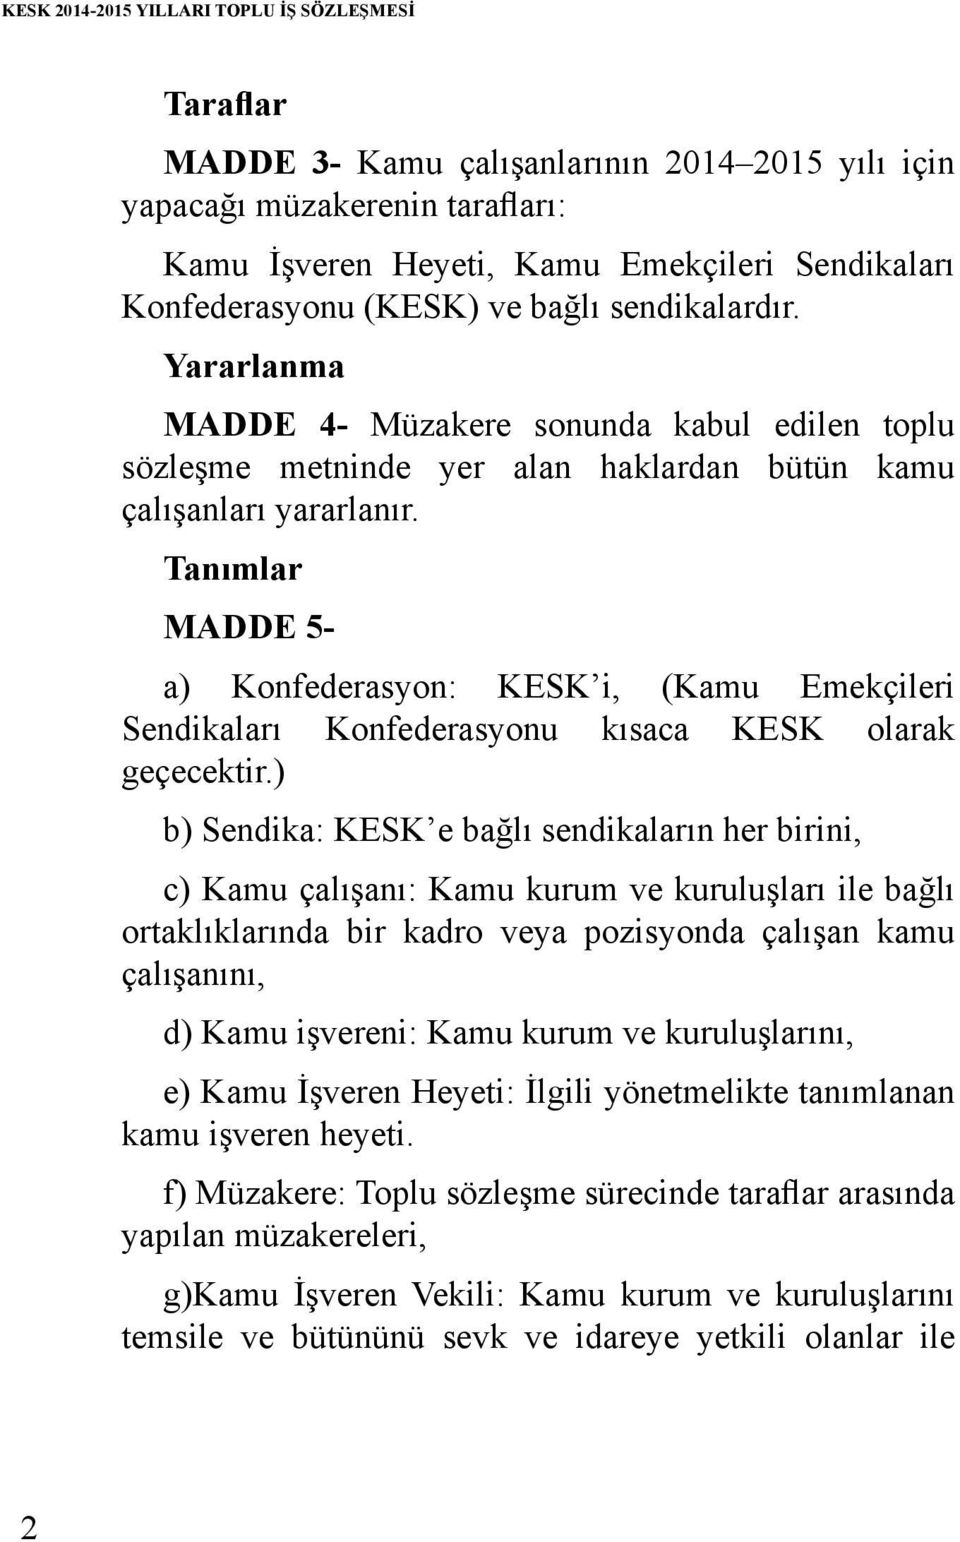 Tanımlar MADDE 5- a) Konfederasyon: KESK i, (Kamu Emekçileri Sendikaları Konfederasyonu kısaca KESK olarak geçecektir.